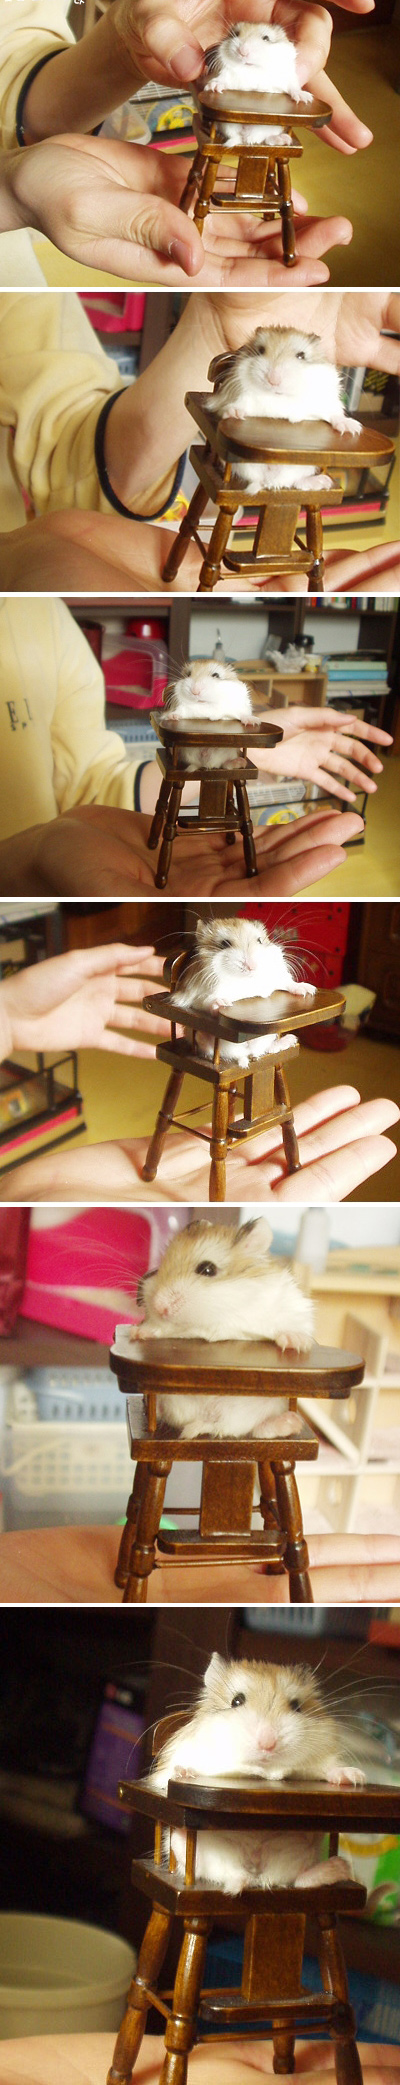 Cute Hamster.jpg